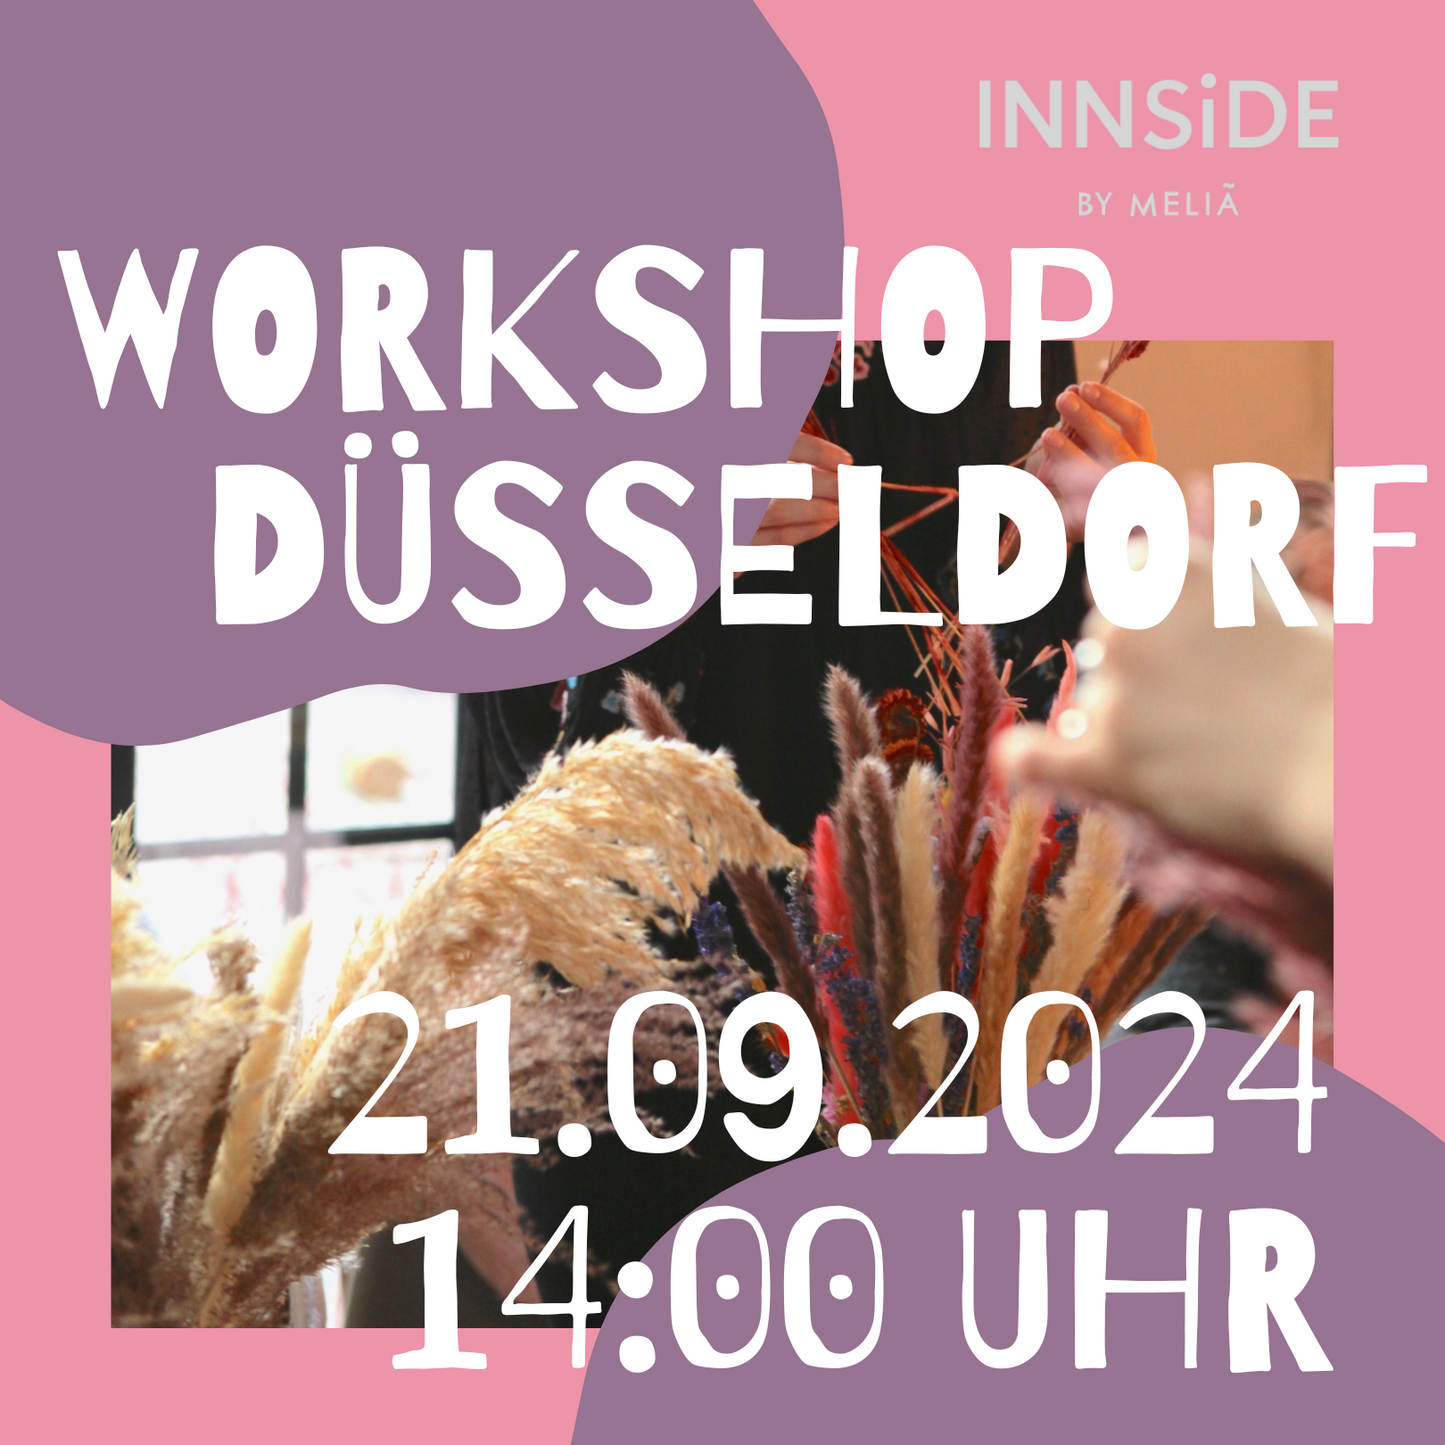 DAY WORKSHOP - Trockenblumenbouquet Workshop INNSIDE Am Seestern Düsseldorf 21.09.2024 14 Uhr